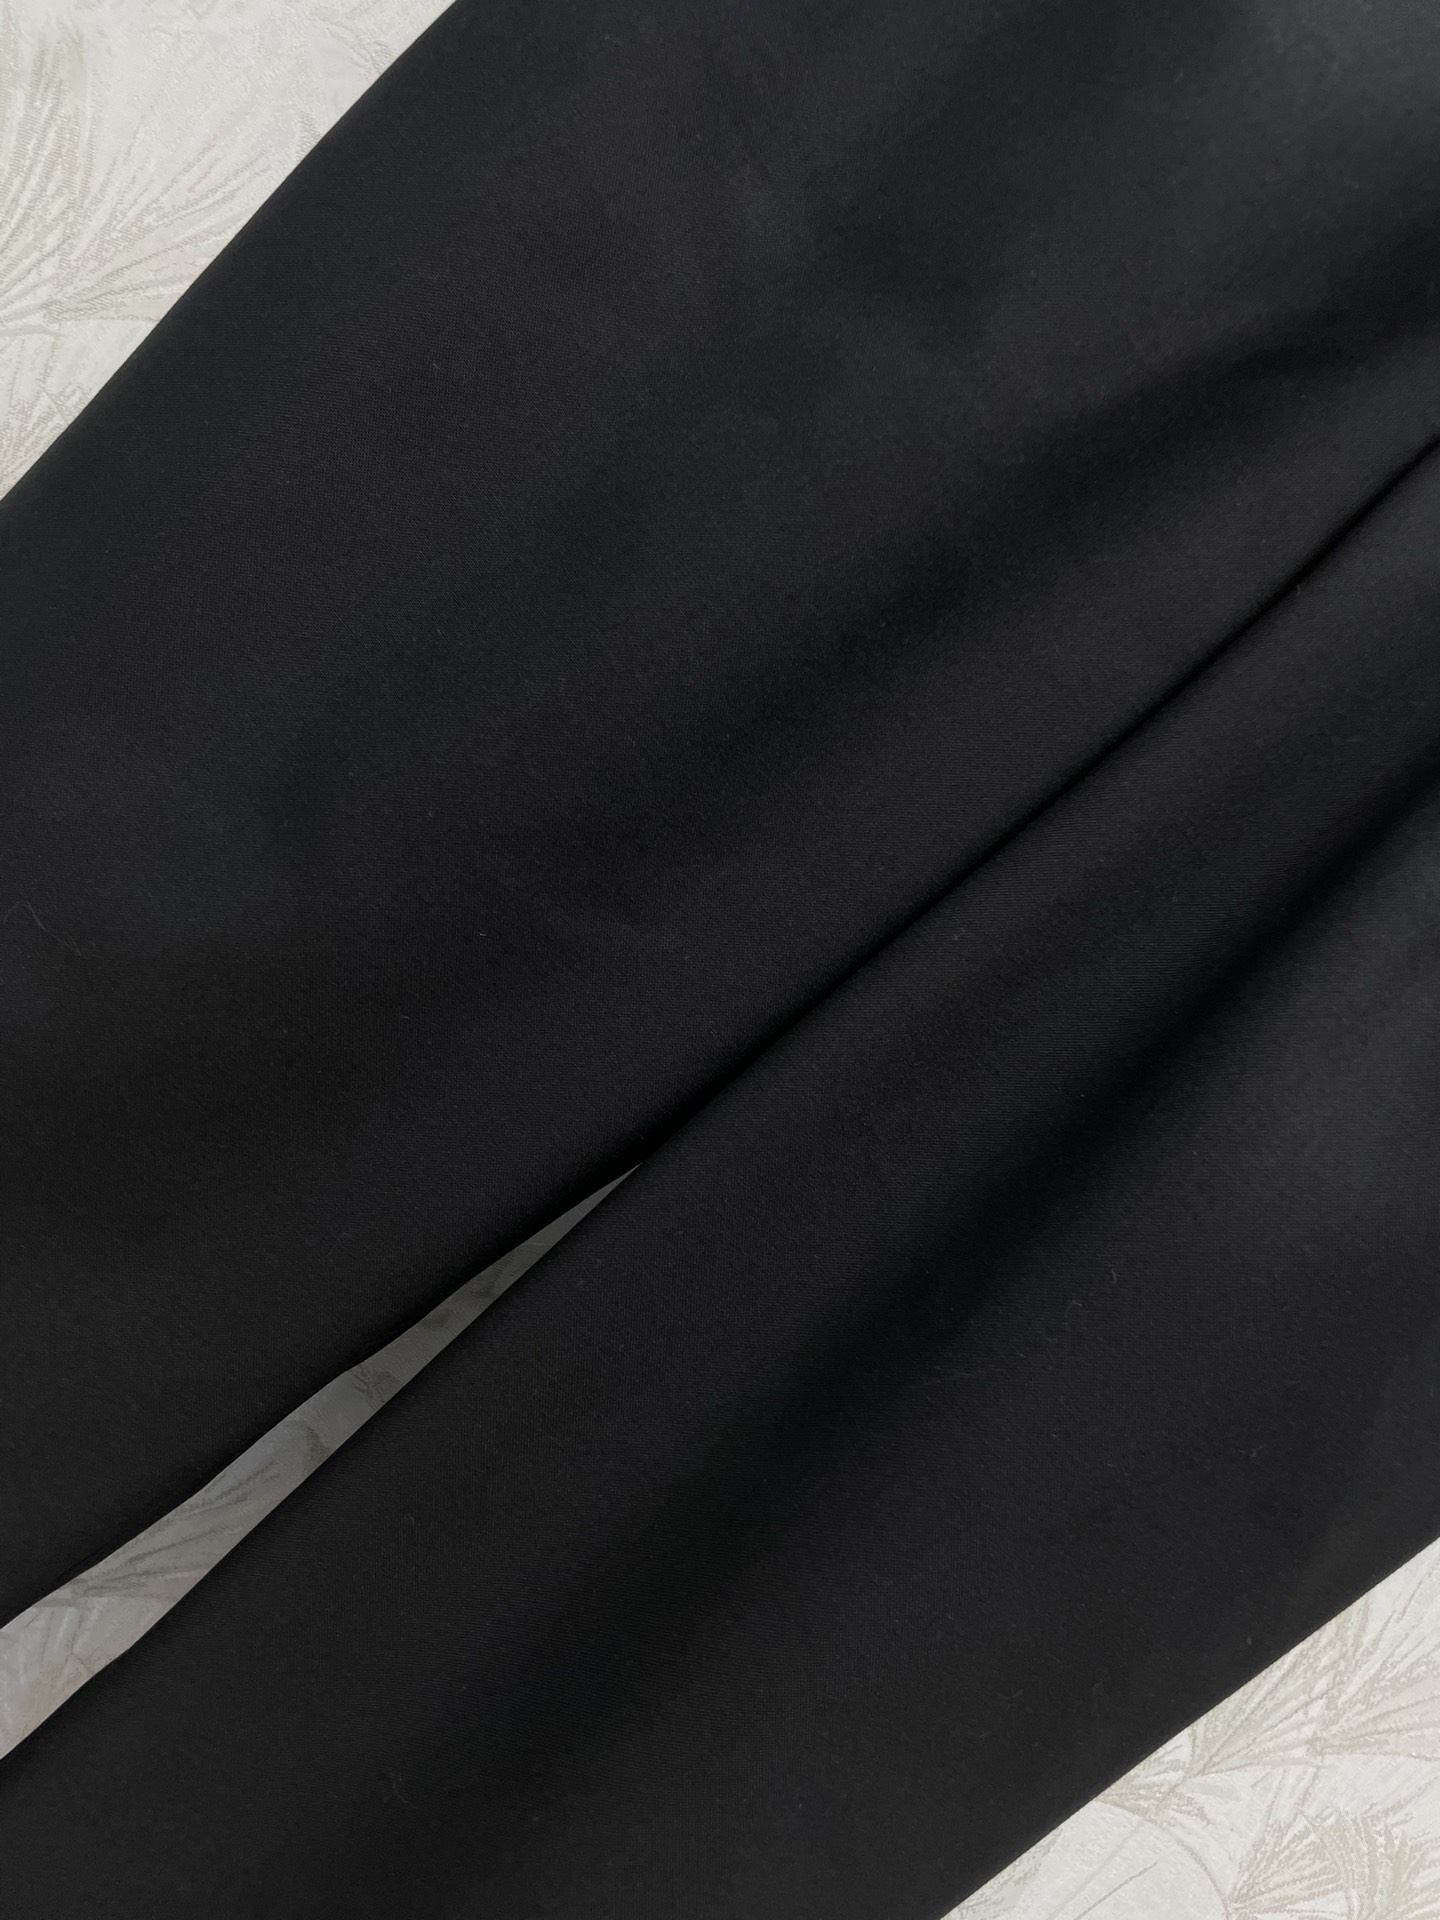 FD24春夏翻边式设计不规则西服裤高腰直筒修身裤型恰到好处修饰腿型腰头翻边式的设计非常新潮又有亮点定制的